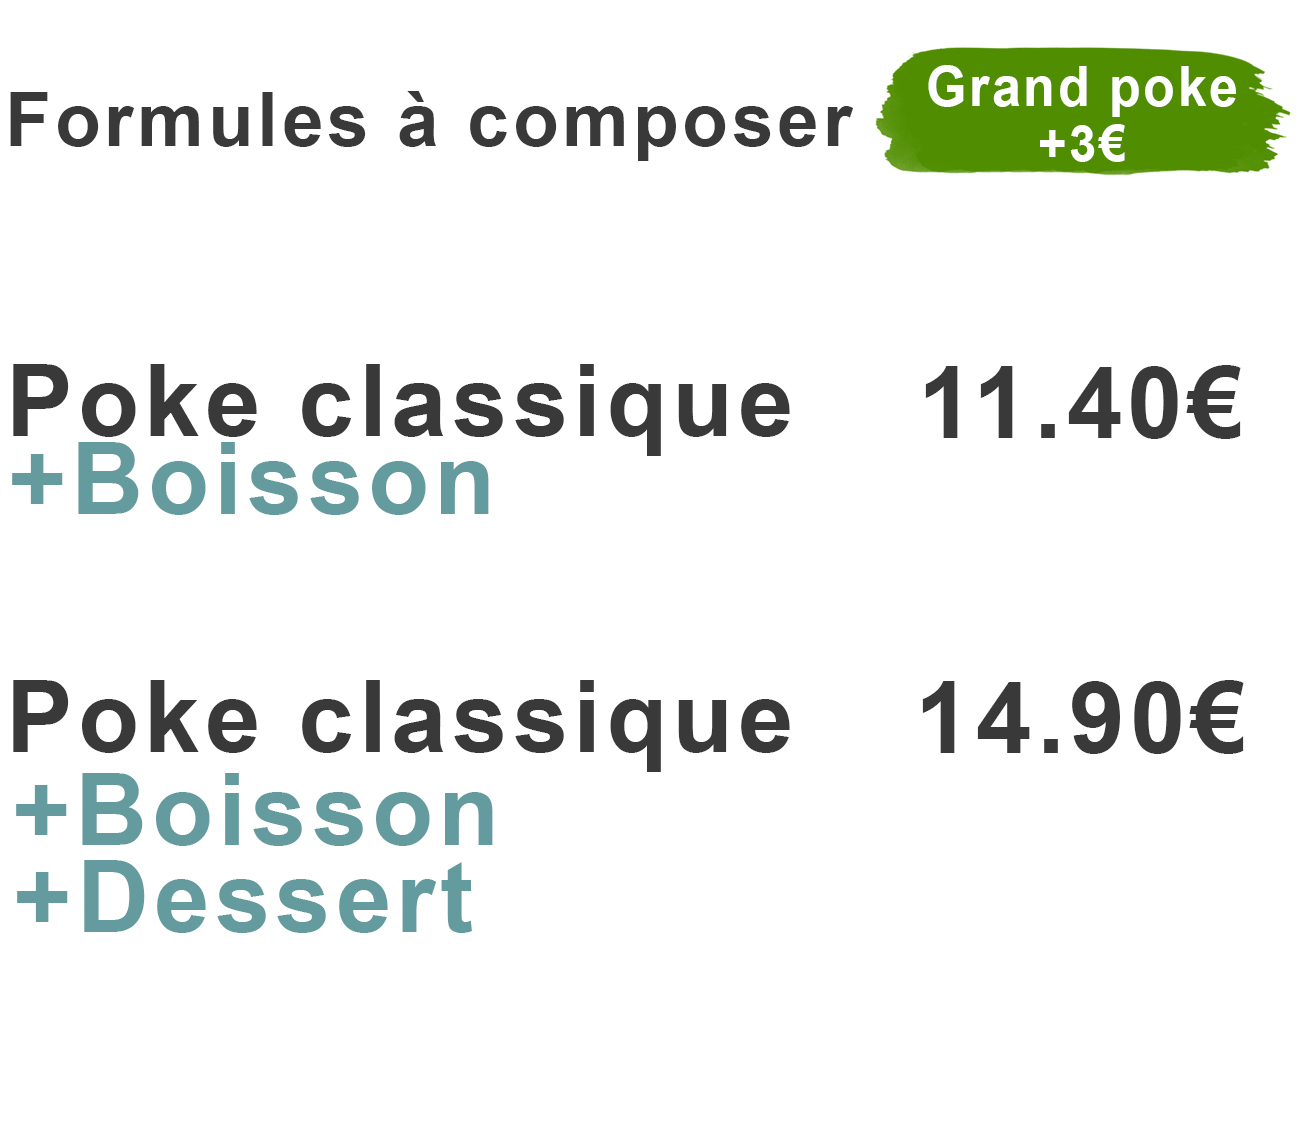 Formule à composer poke classique + boisson 11.40 euros poke classique + boisson + dessert 14.90 euros +3 euros en grand